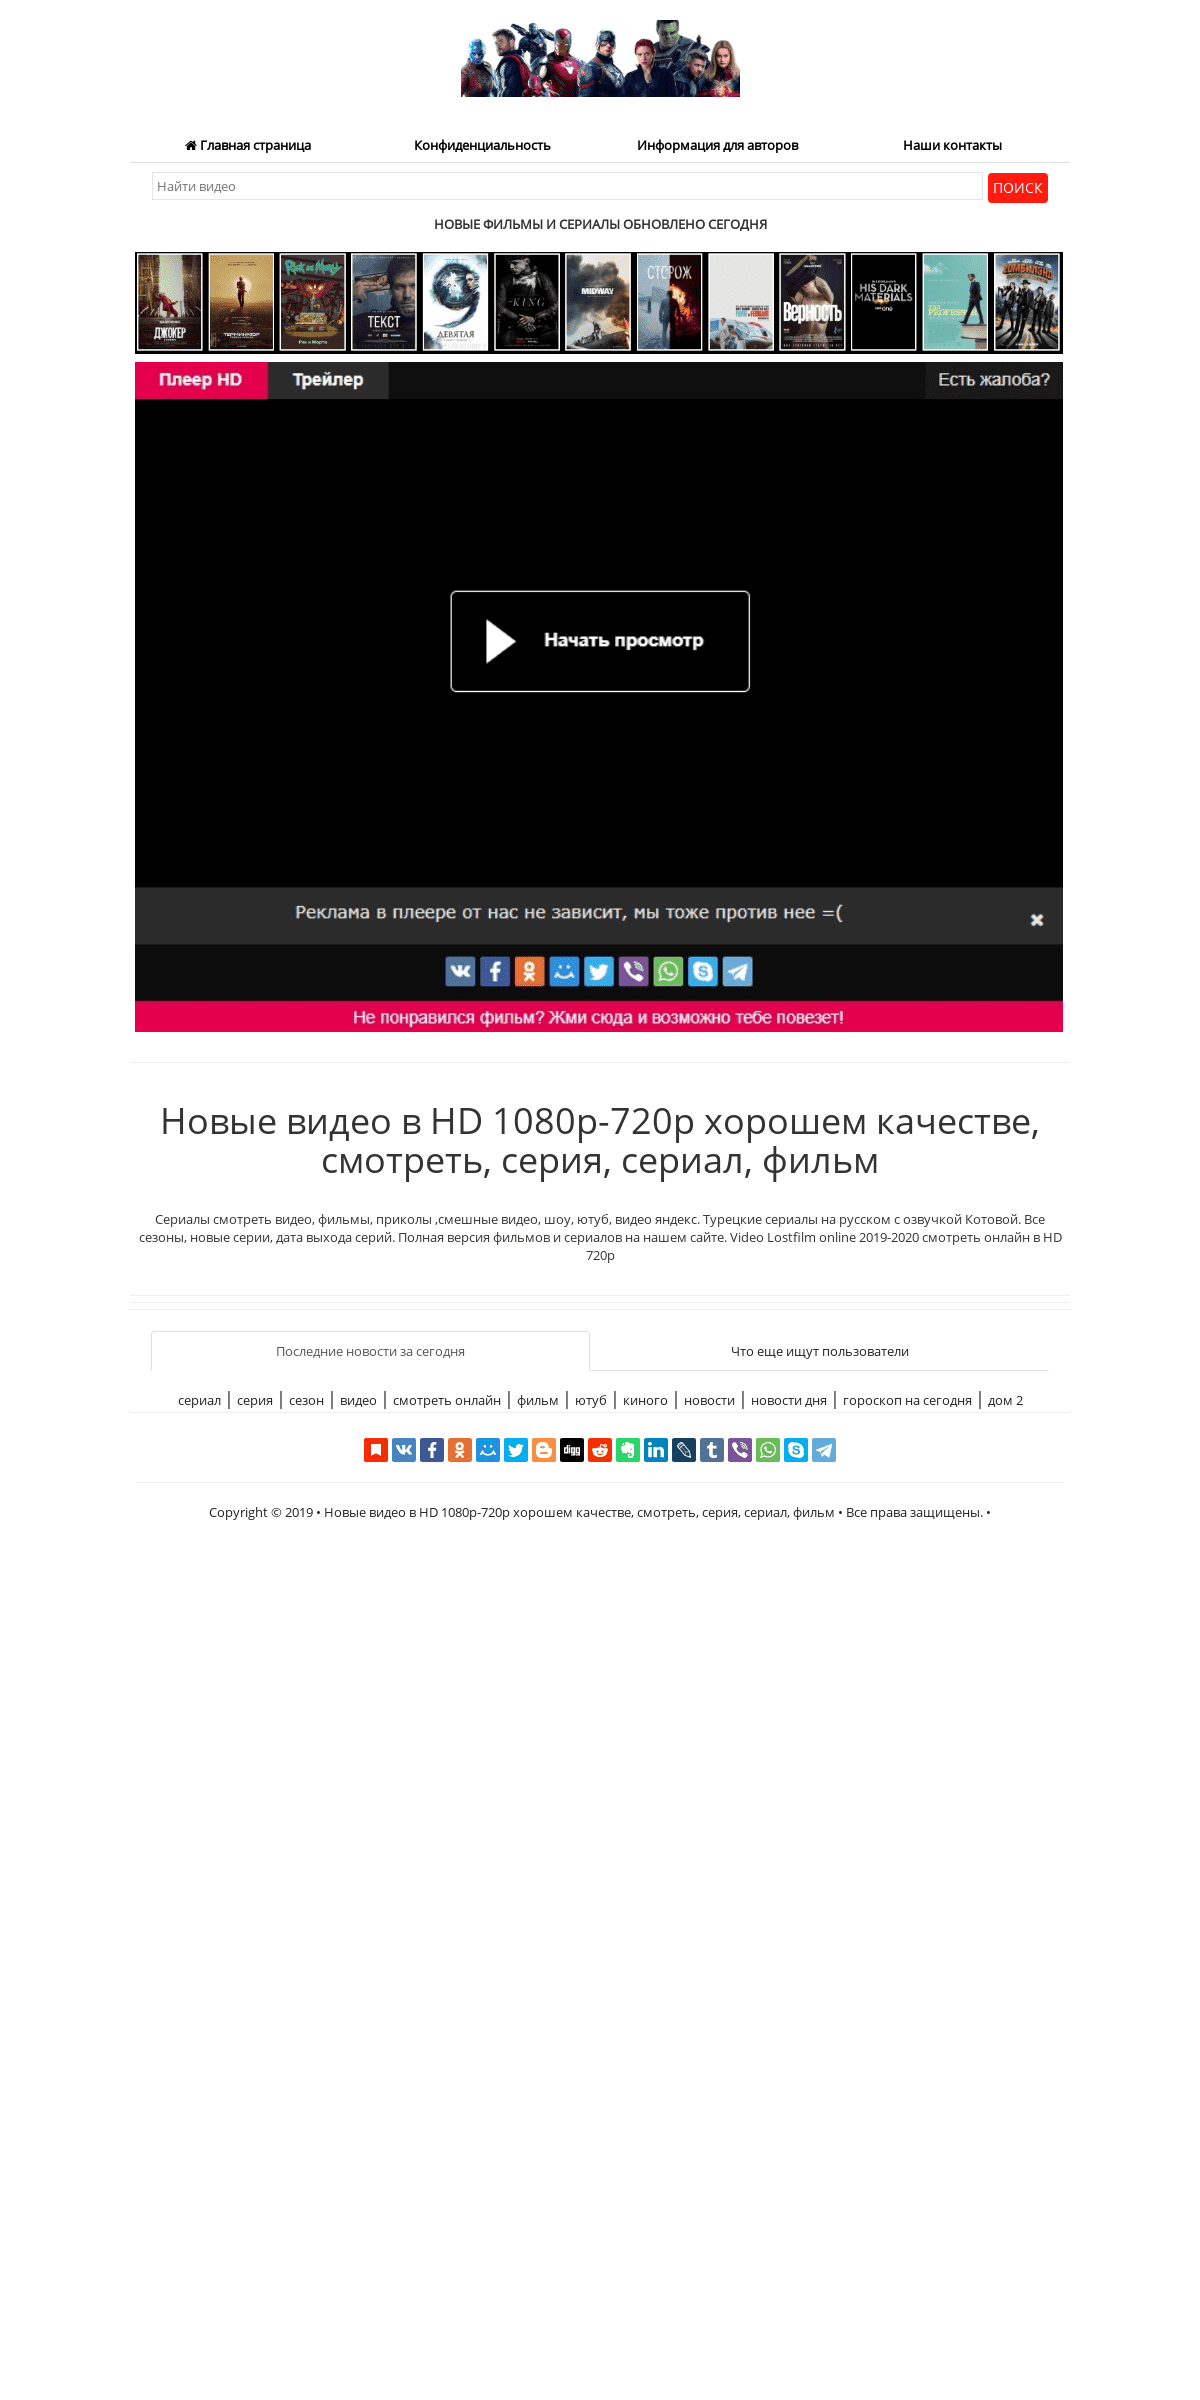 A complete backup of tvnews2019.ru